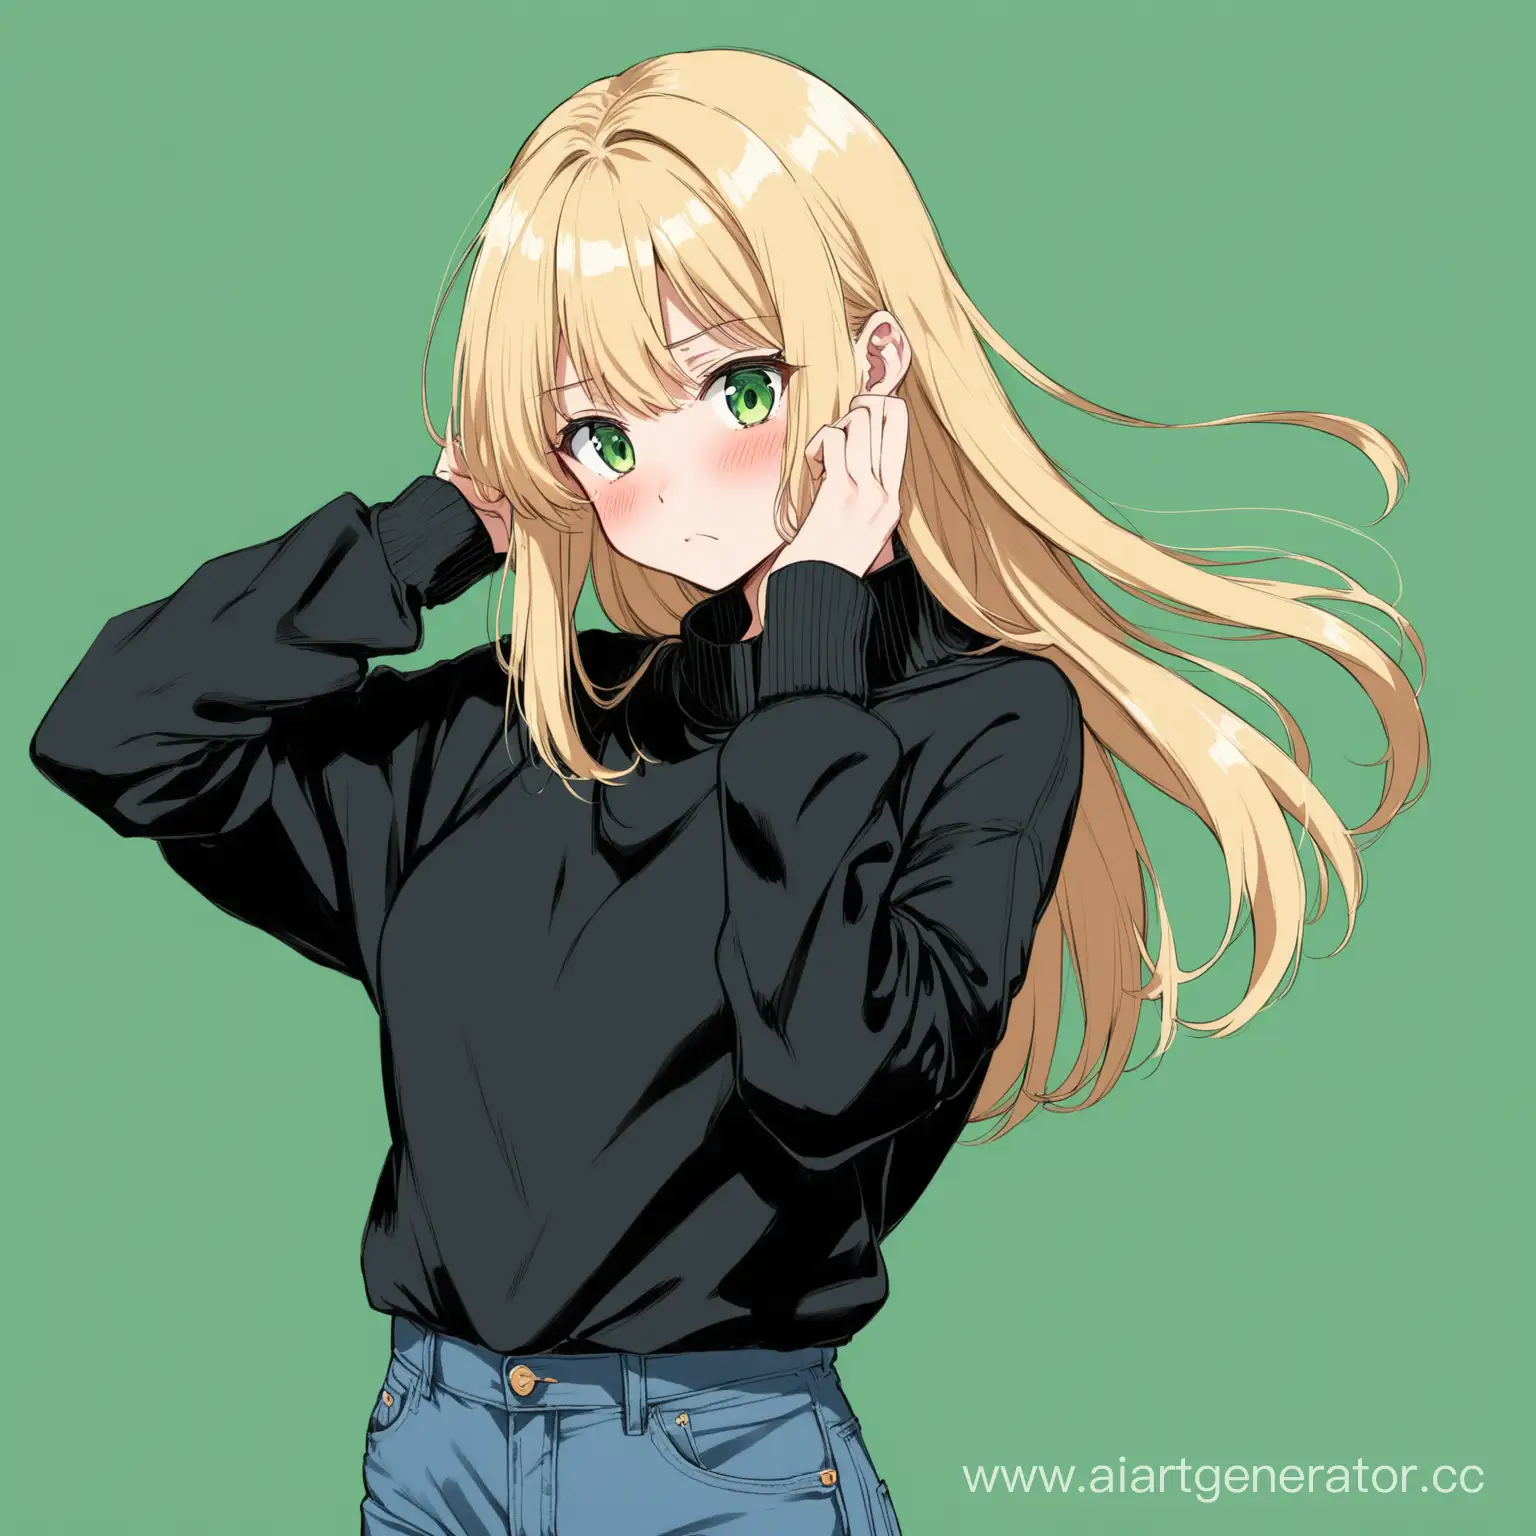 аниме девочка блондинка в чёрный свитере и джинсах во весь рост стесняется трогает волосы и уводит голову в сторону на зелёном фоне